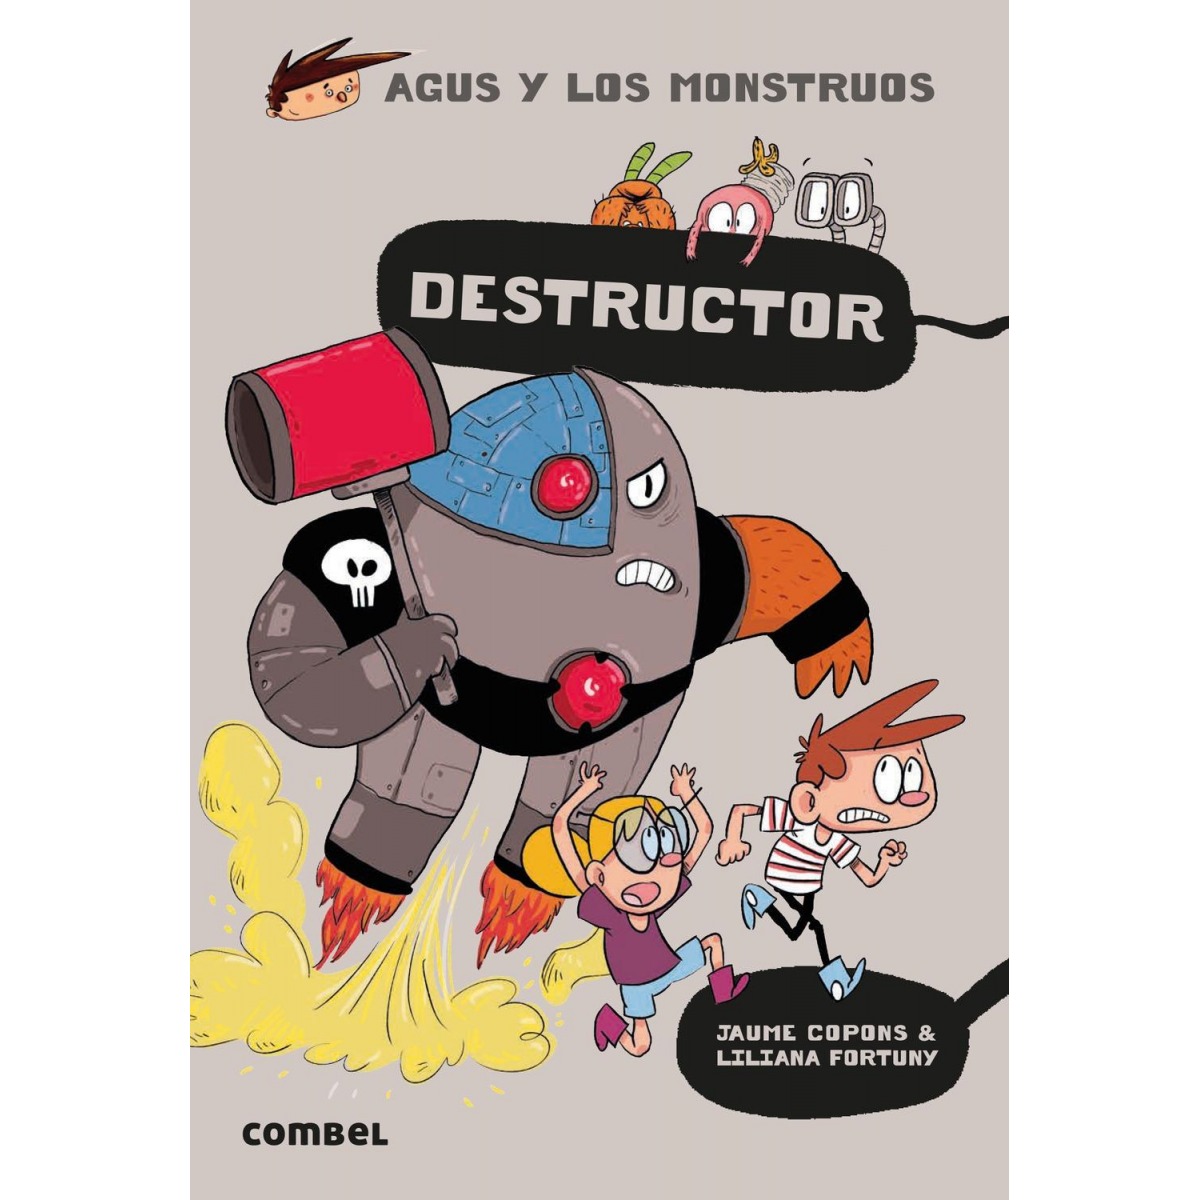 Agus y los Monstruos El Destructor. Collección libros lectura niños 7